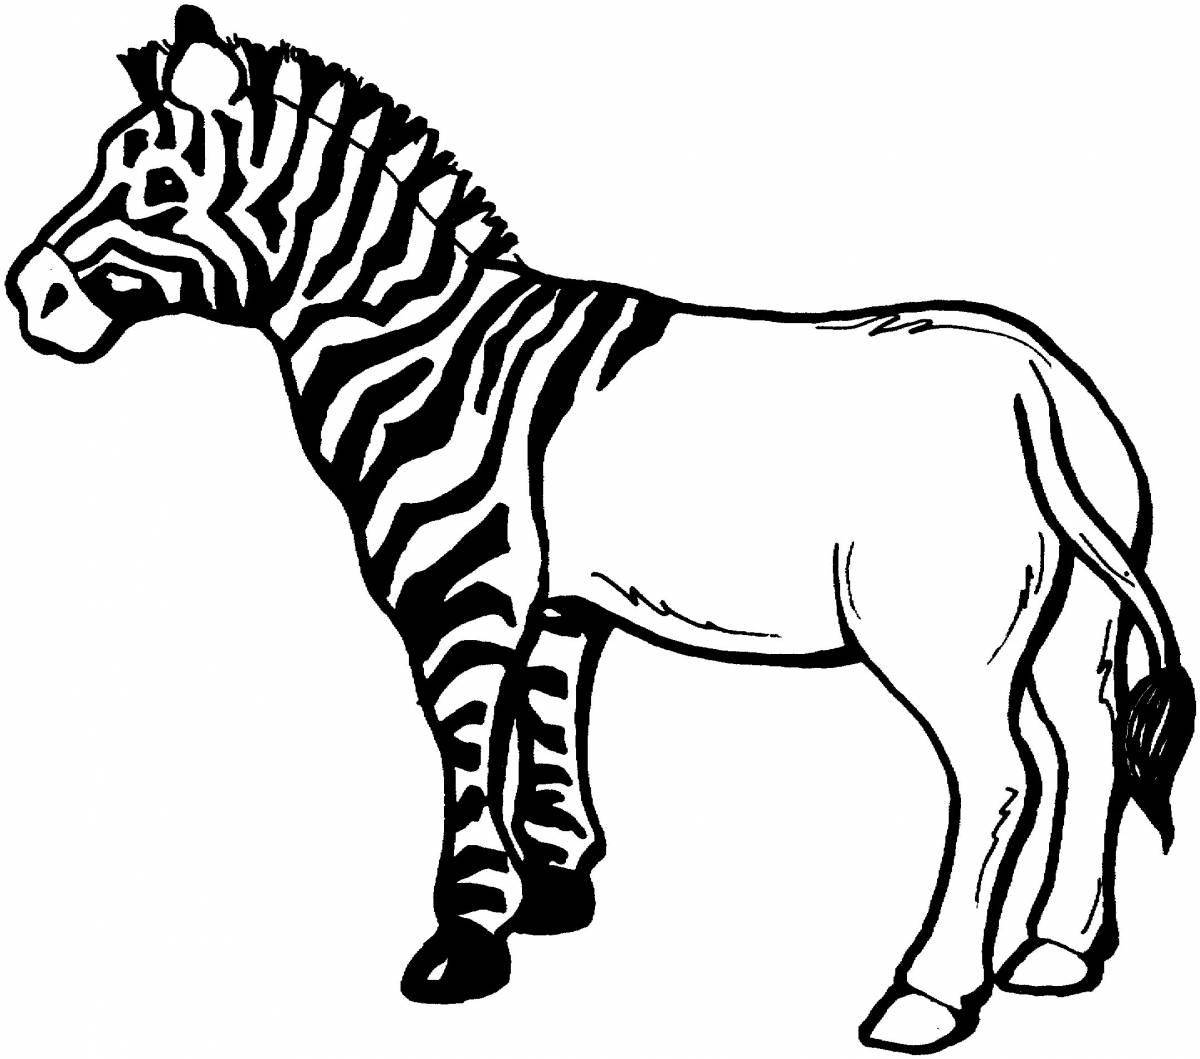 Zebra no stripes for kids #4